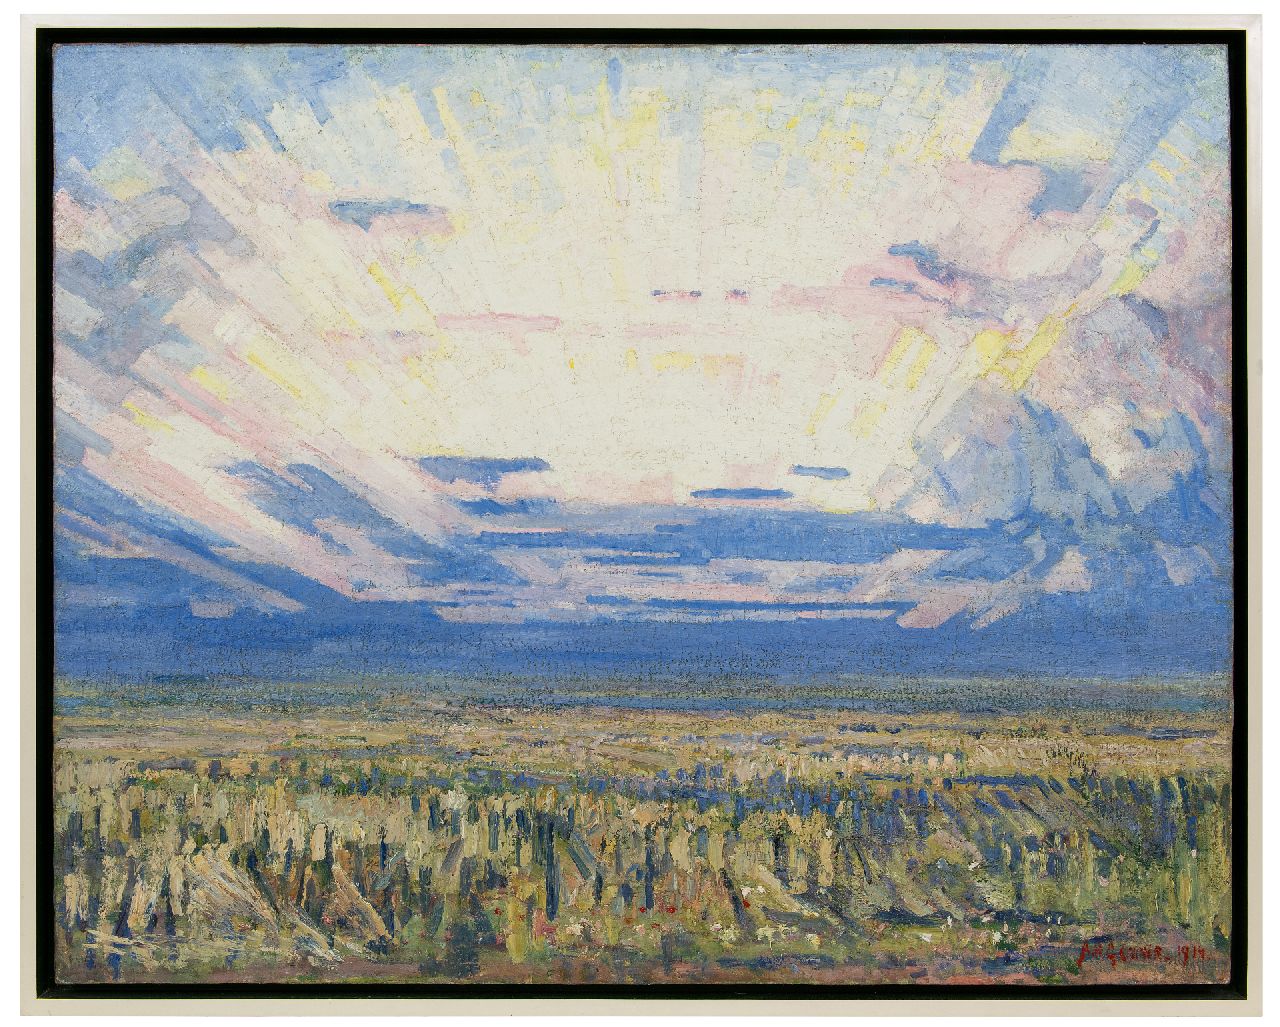 Gouwe A.H.  | Adriaan Herman Gouwe | Schilderijen te koop aangeboden | Landschap bij zonsopgang, olieverf op doek 79,8 x 99,5 cm, gesigneerd rechtsonder en gedateerd 1914